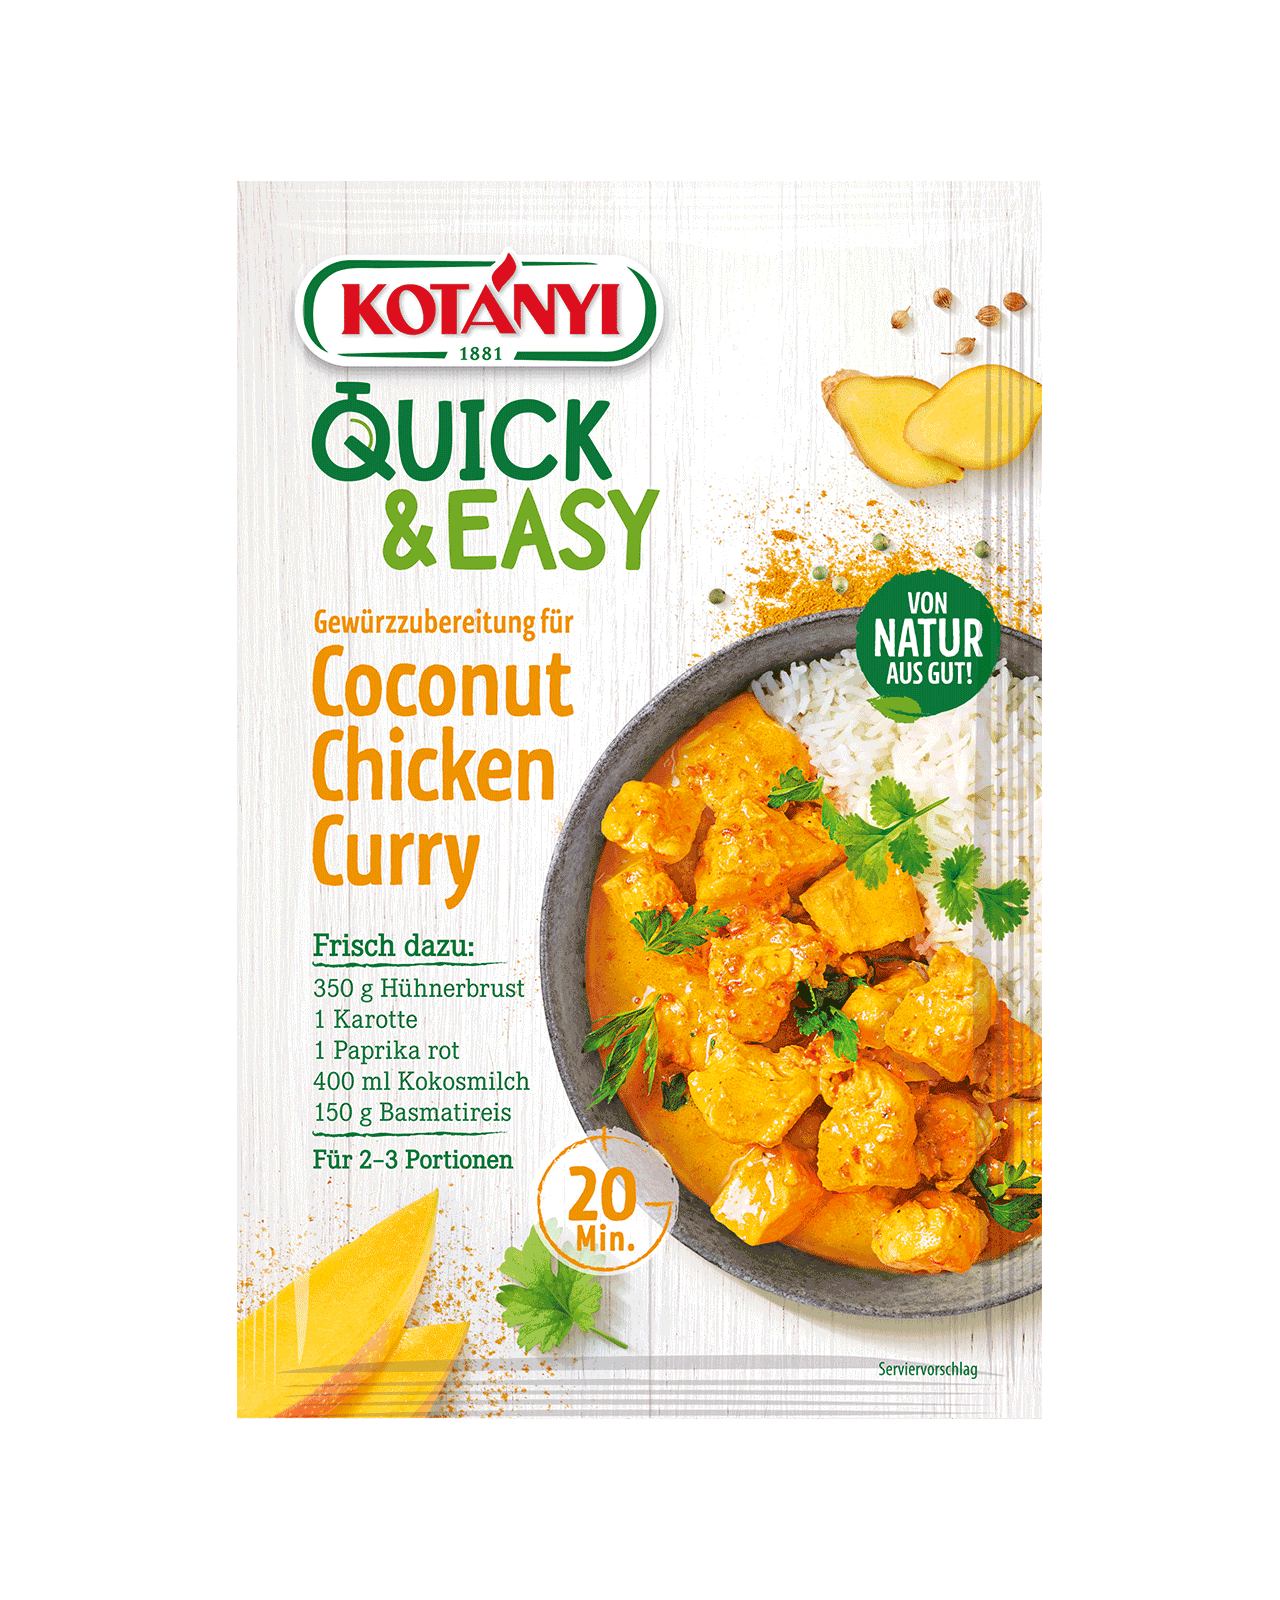 9001414035887 358801 Kotányi Quick&easy Gewürzubereitung Für Coconut Chicken Curry At Pouch Vs